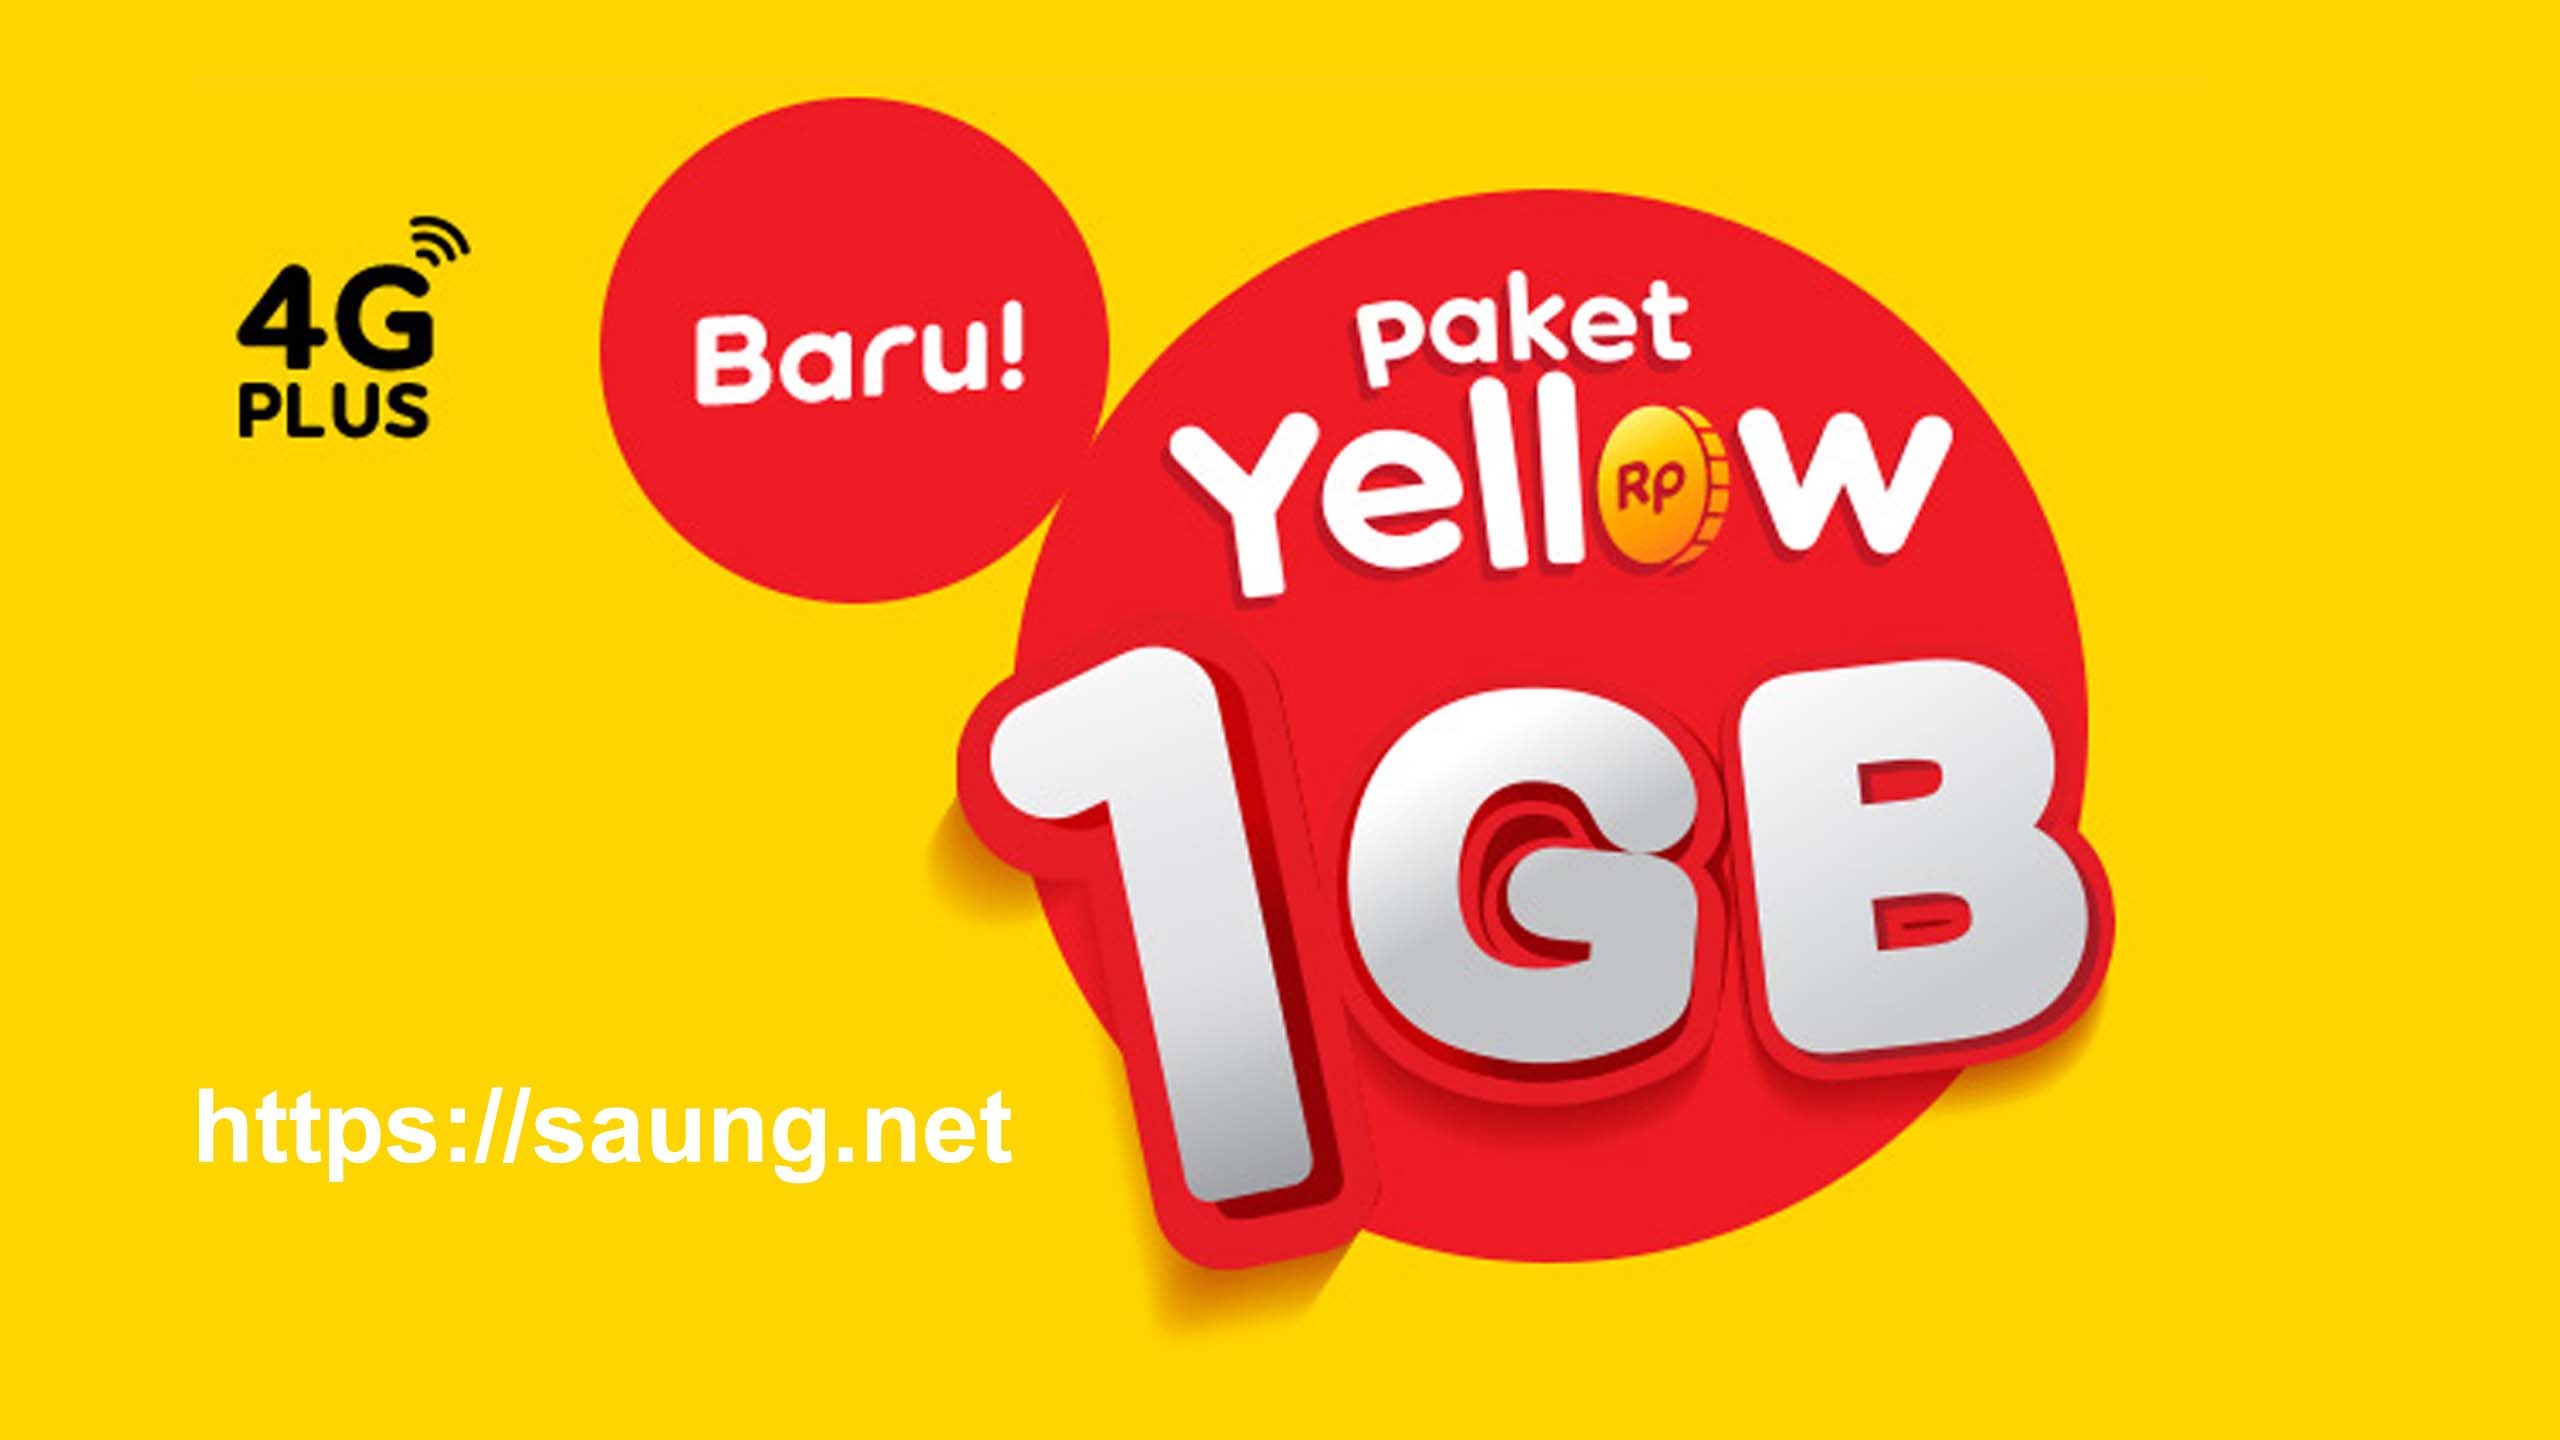 Paket Yellow Indosat